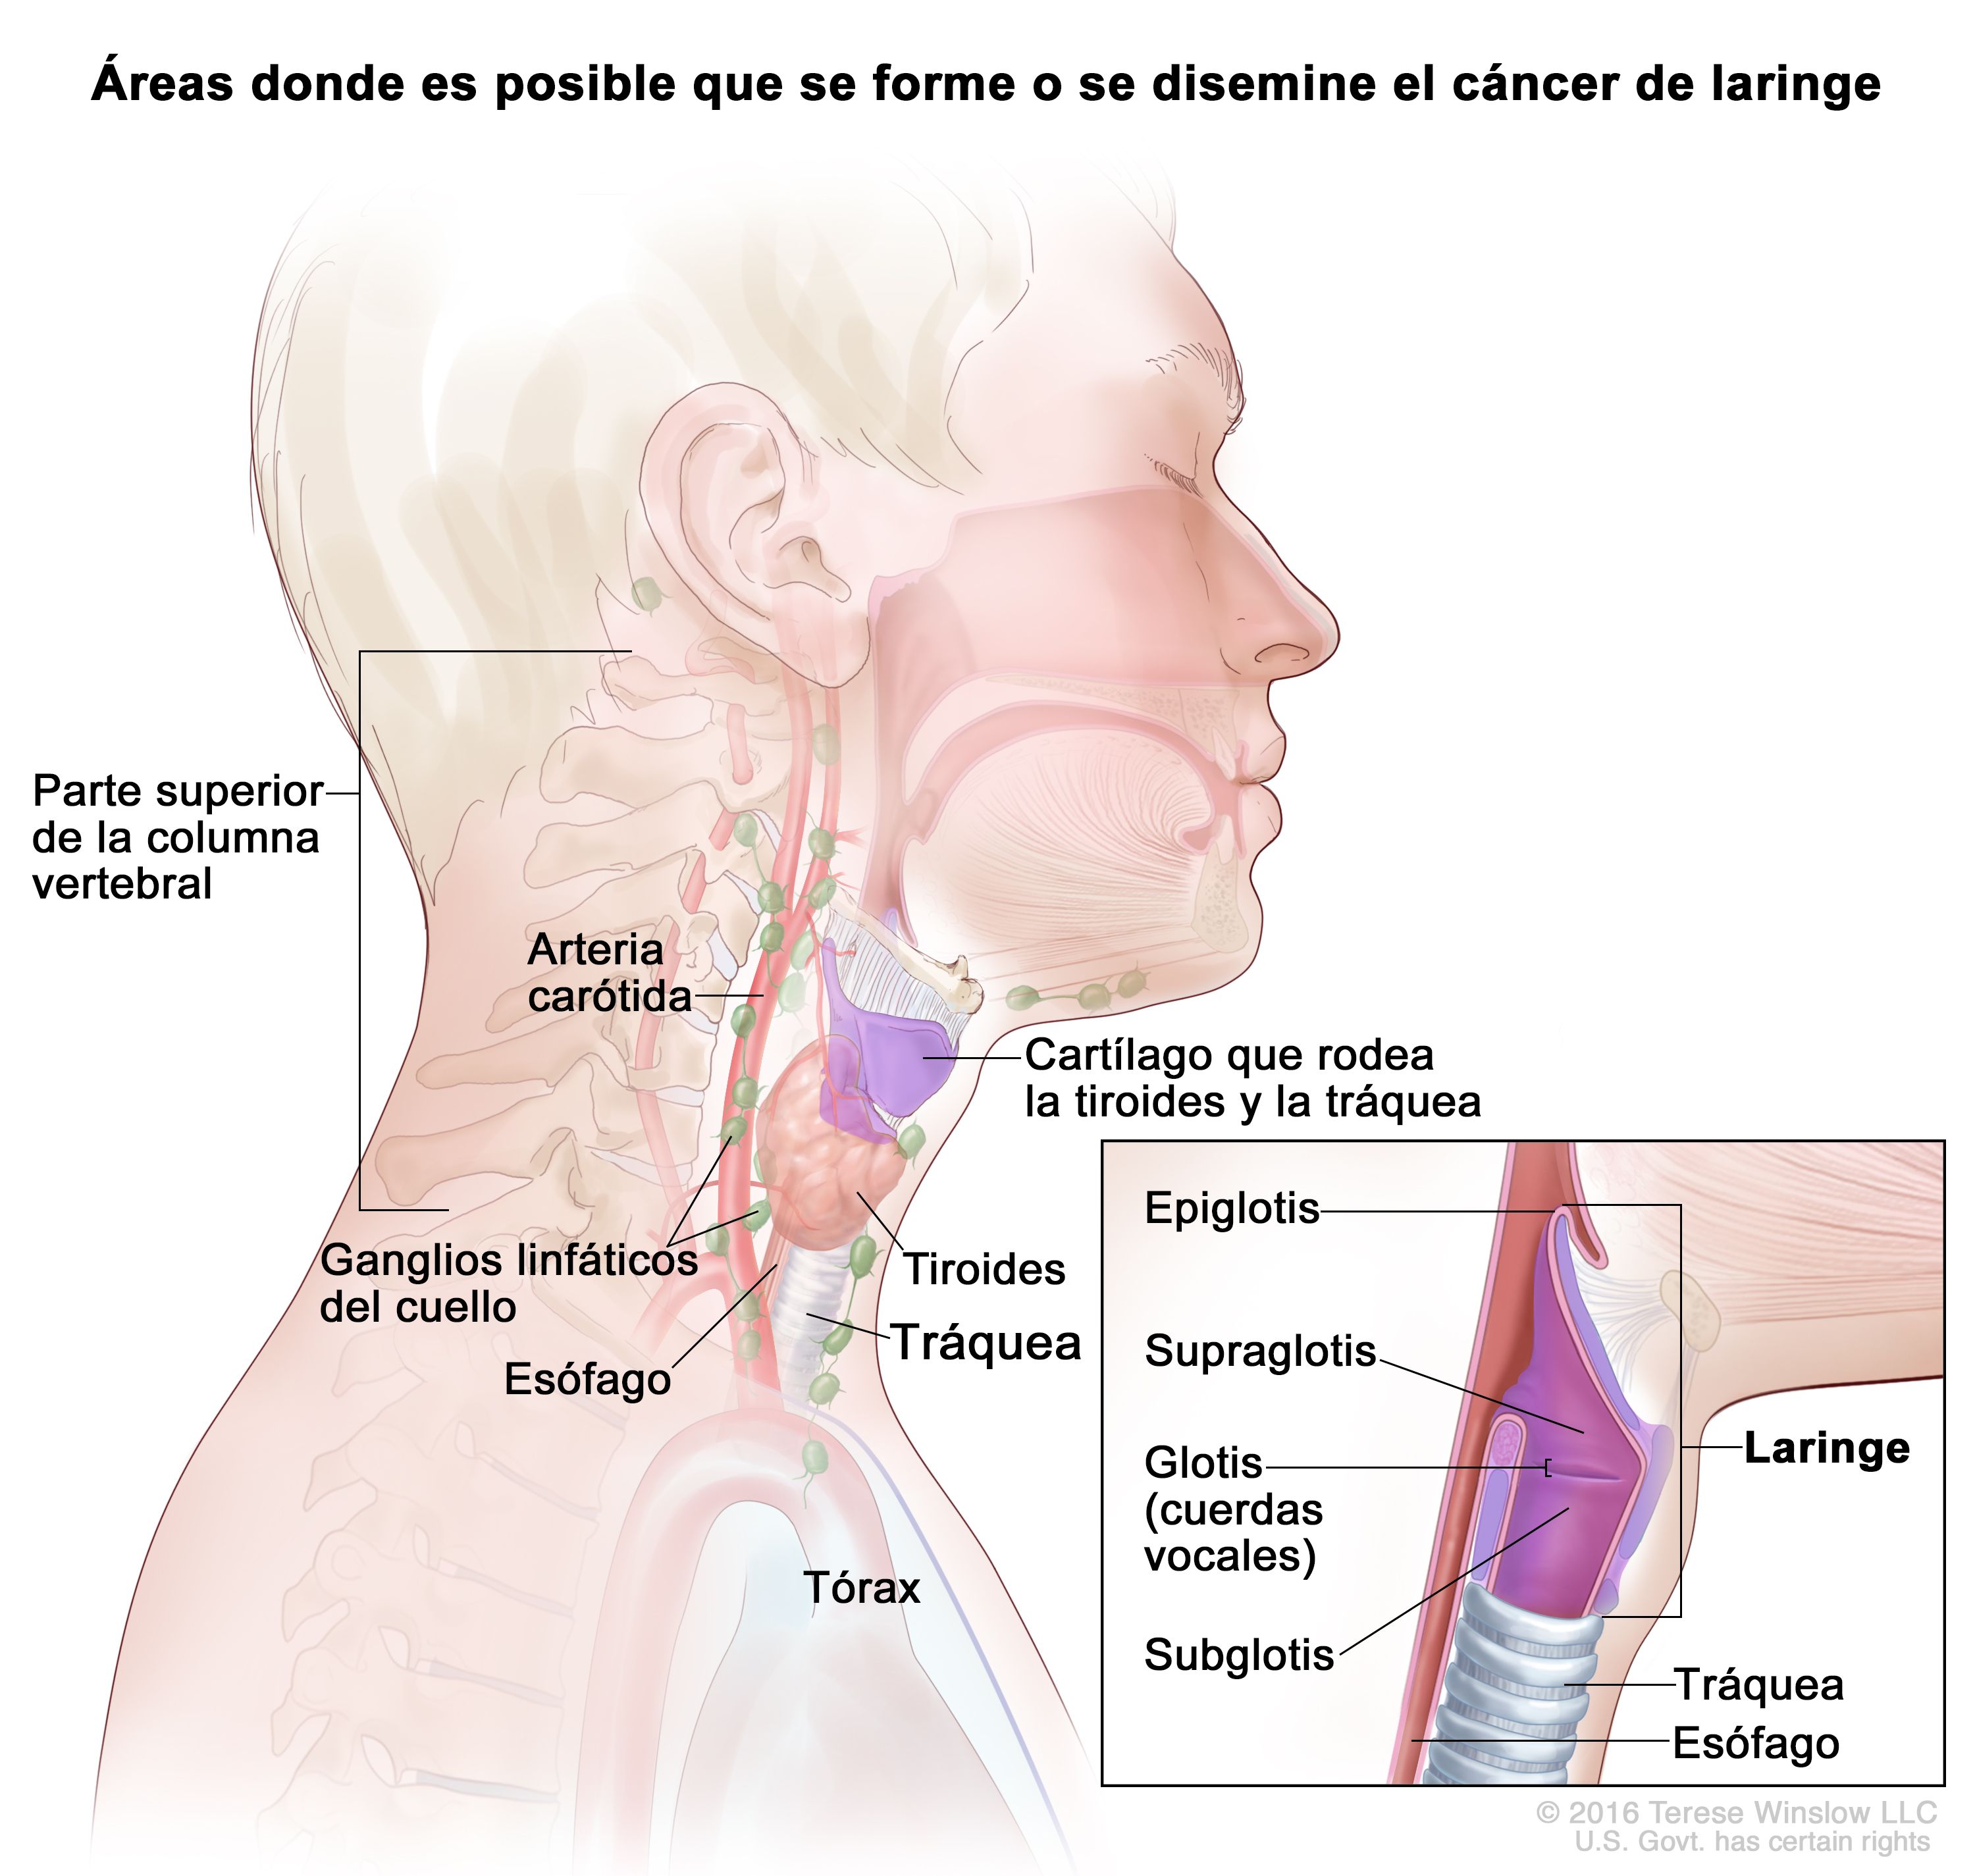 Vandalir débiles halcón Definición de laringe - Diccionario de cáncer del NCI - NCI